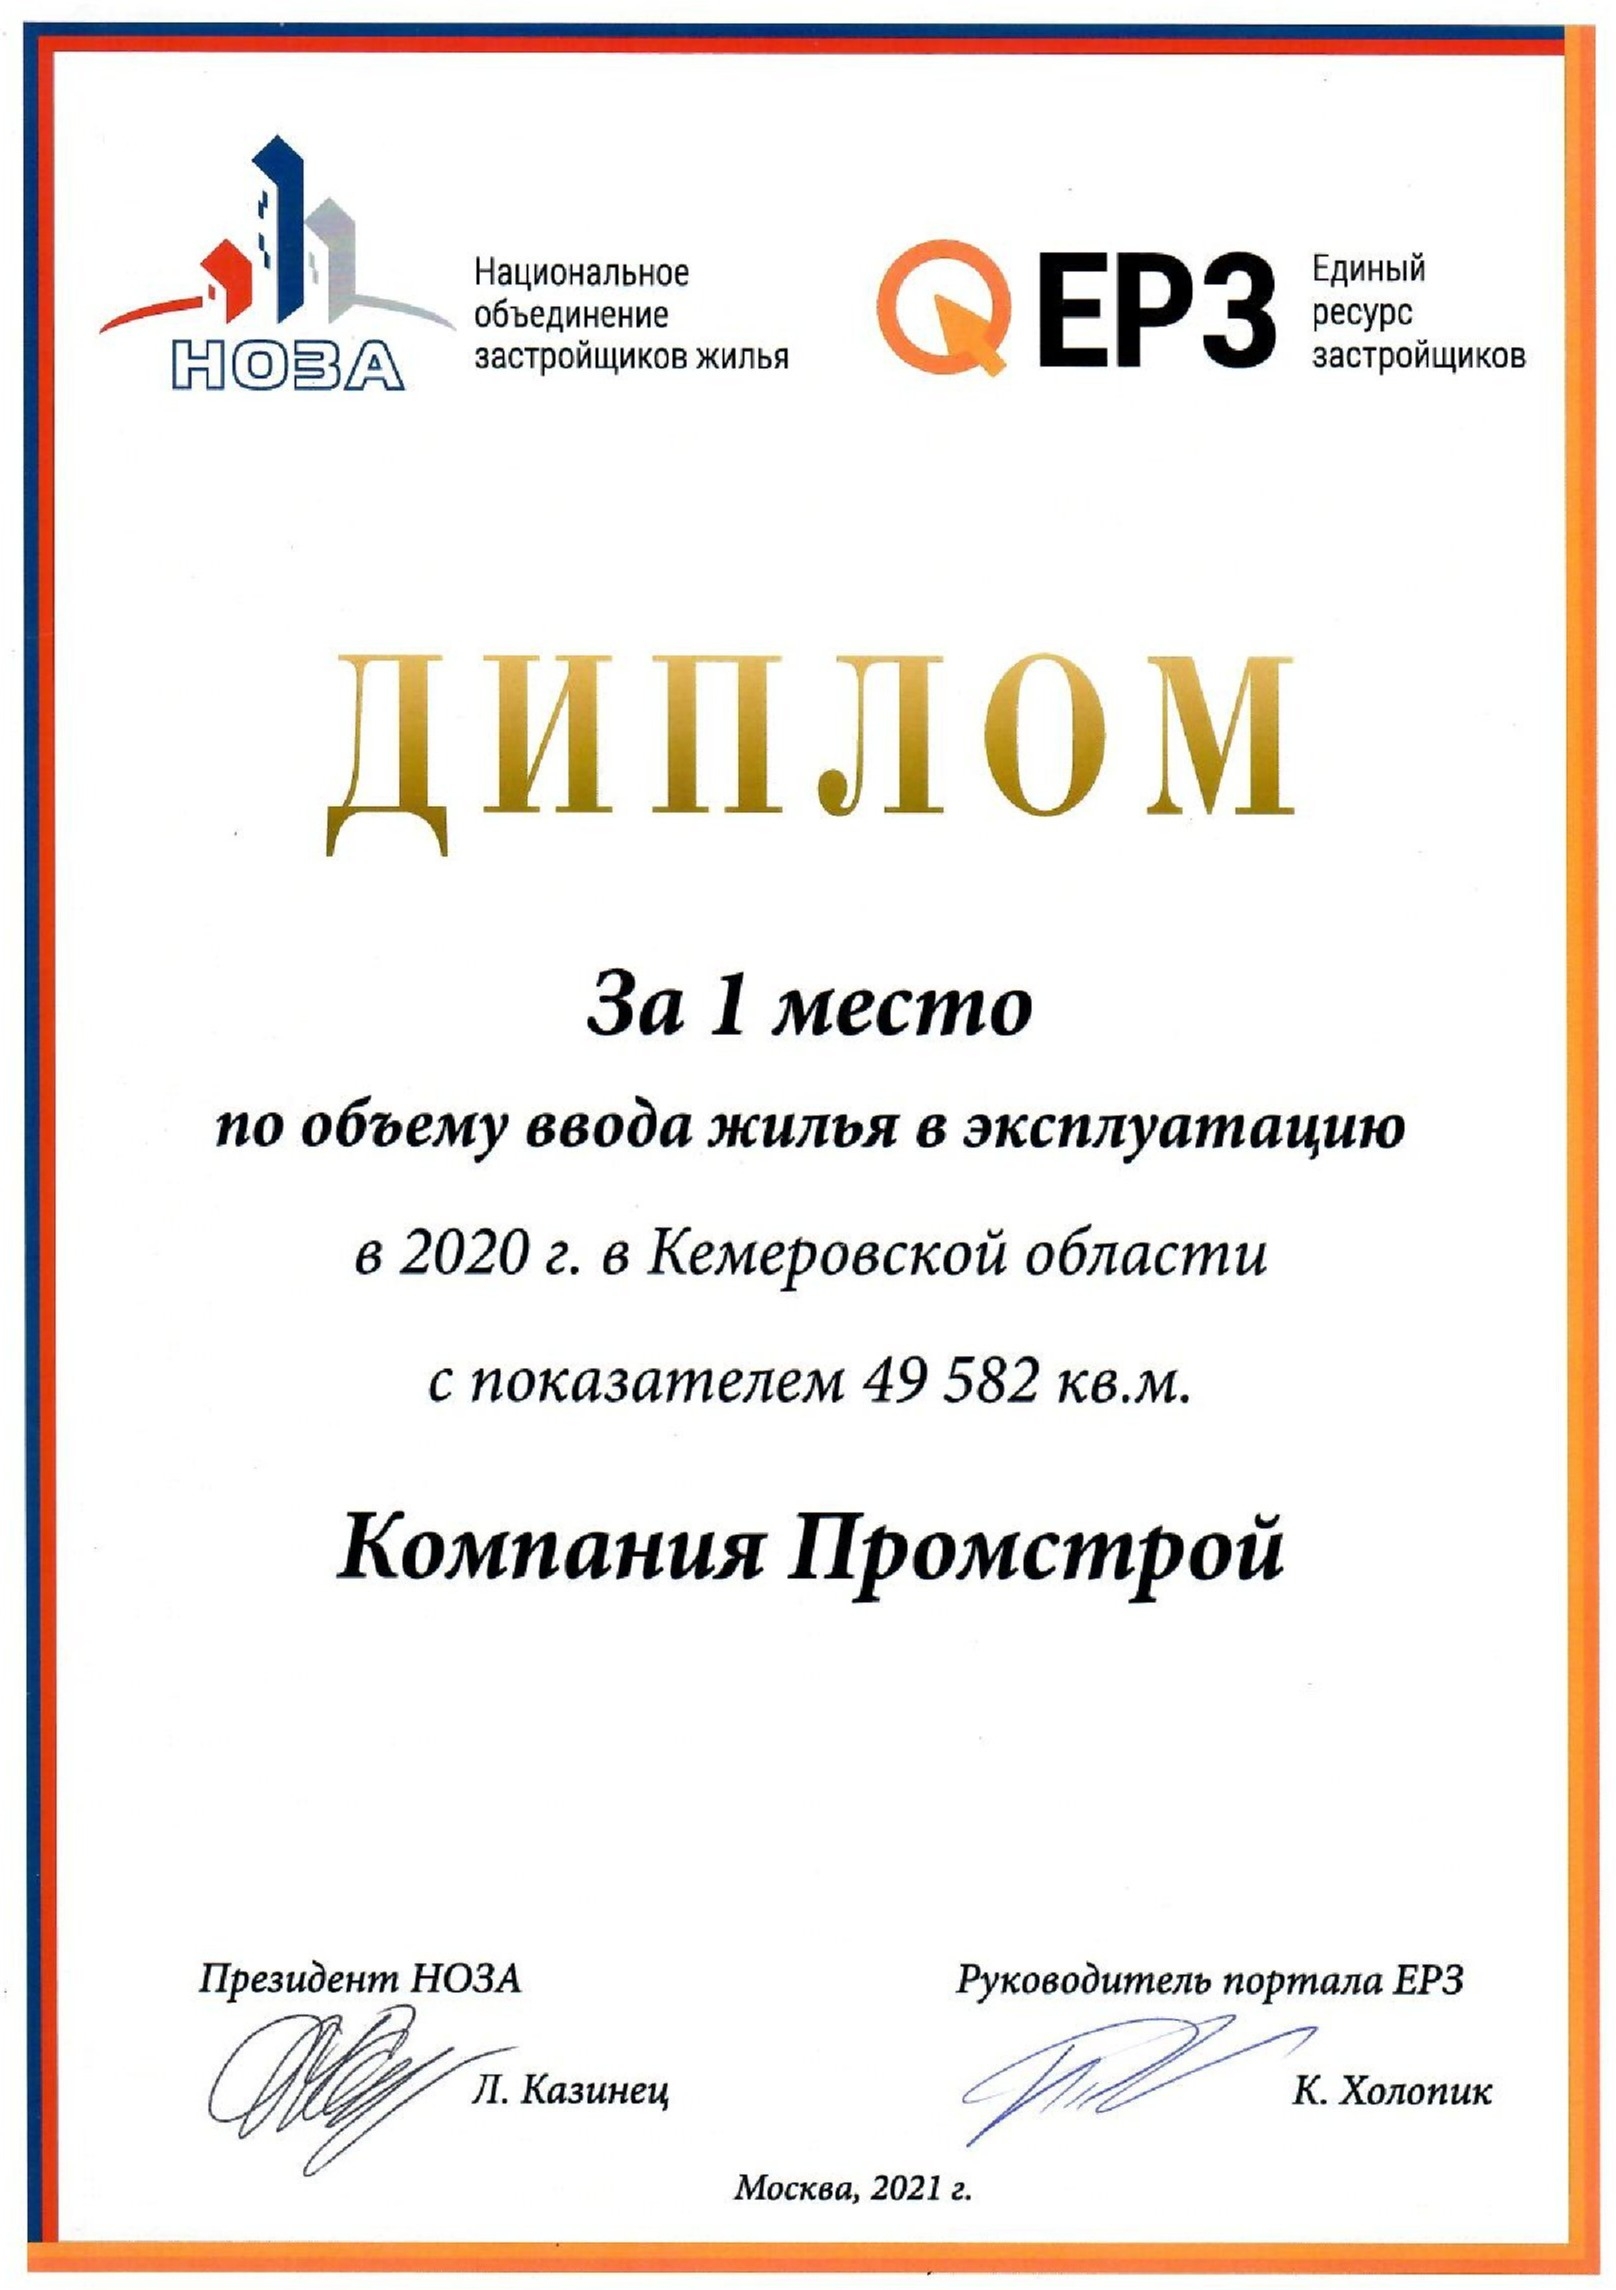 Компания "Промстрой" - лидер по объему ввода жилья в Кузбассе в 2020г